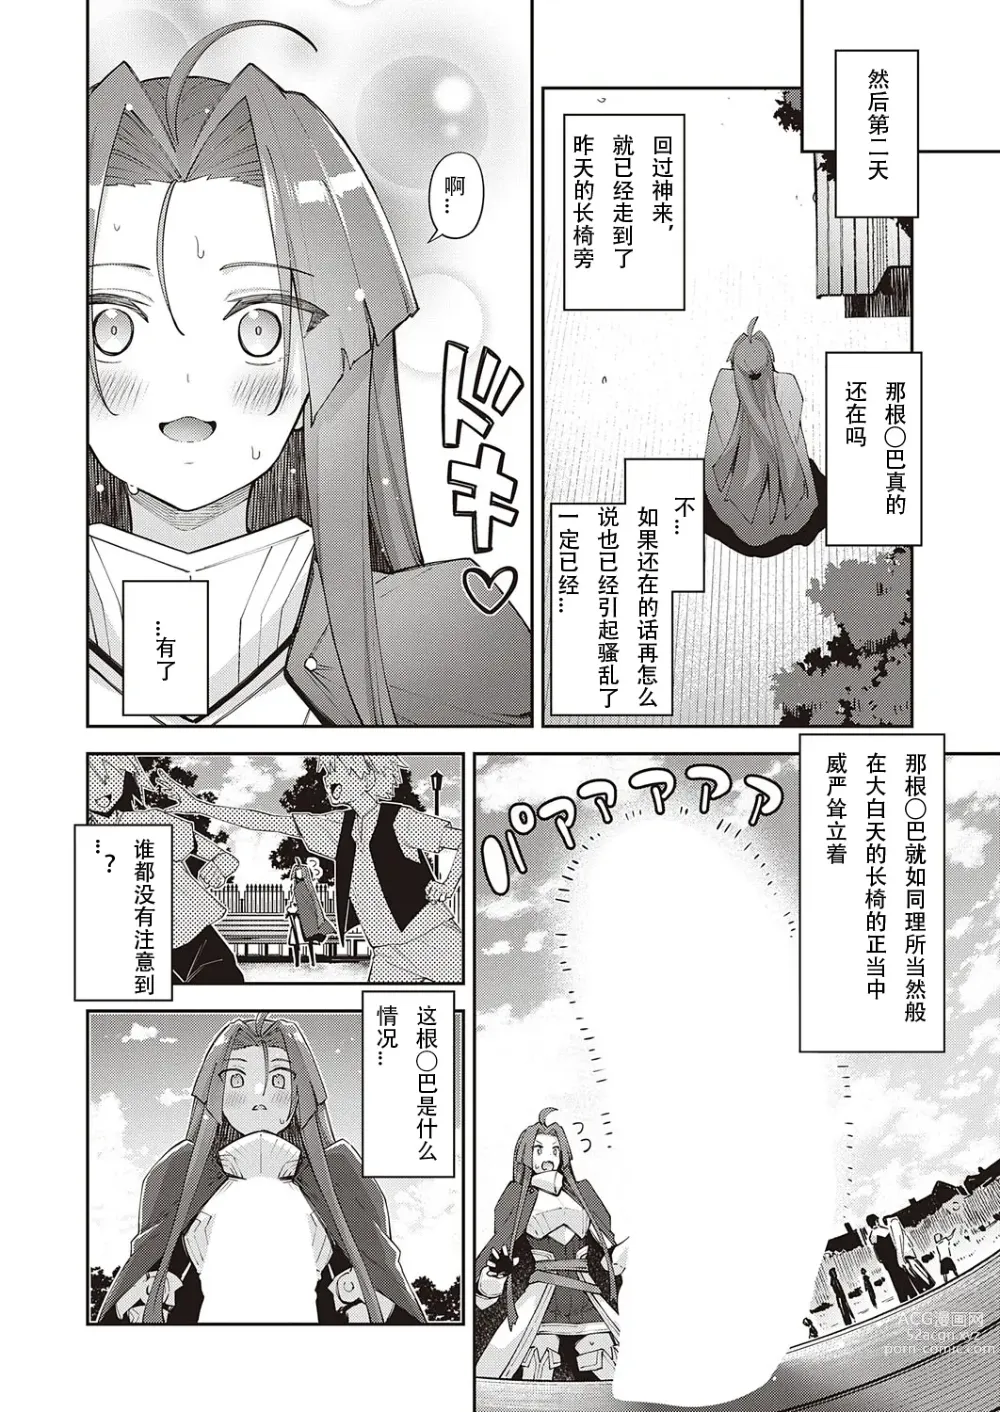 Page 12 of manga 既然来了异世界就用色批技能来全力讴歌 第8枪